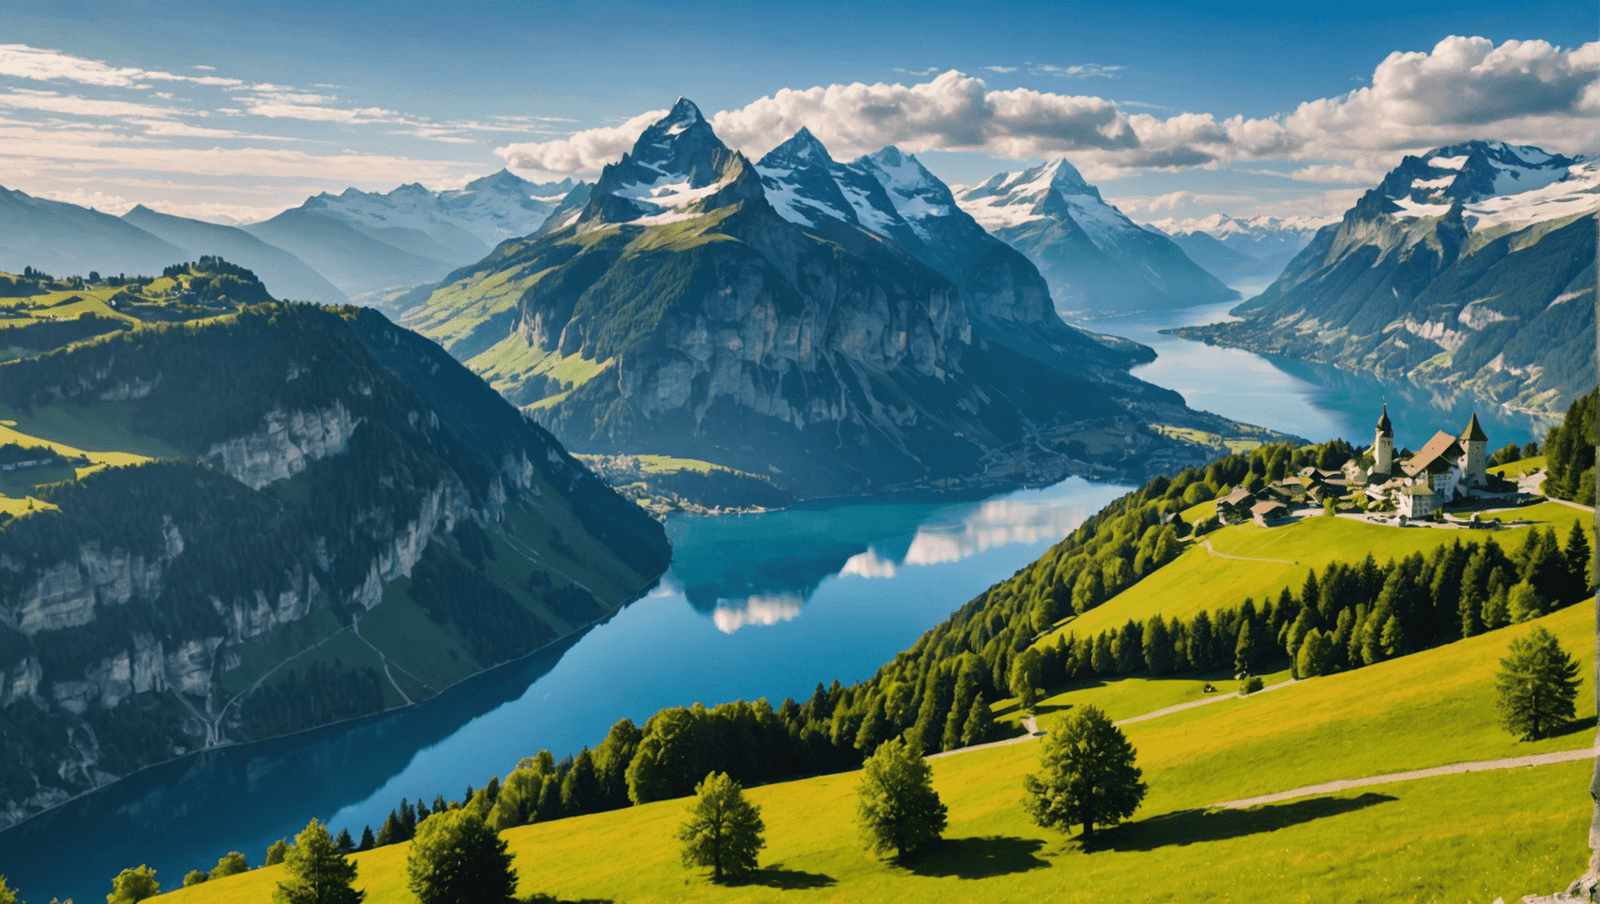 découvrez la suisse à travers notre guide de voyage complet. tout ce que vous devez savoir pour explorer ce magnifique pays vous attend.